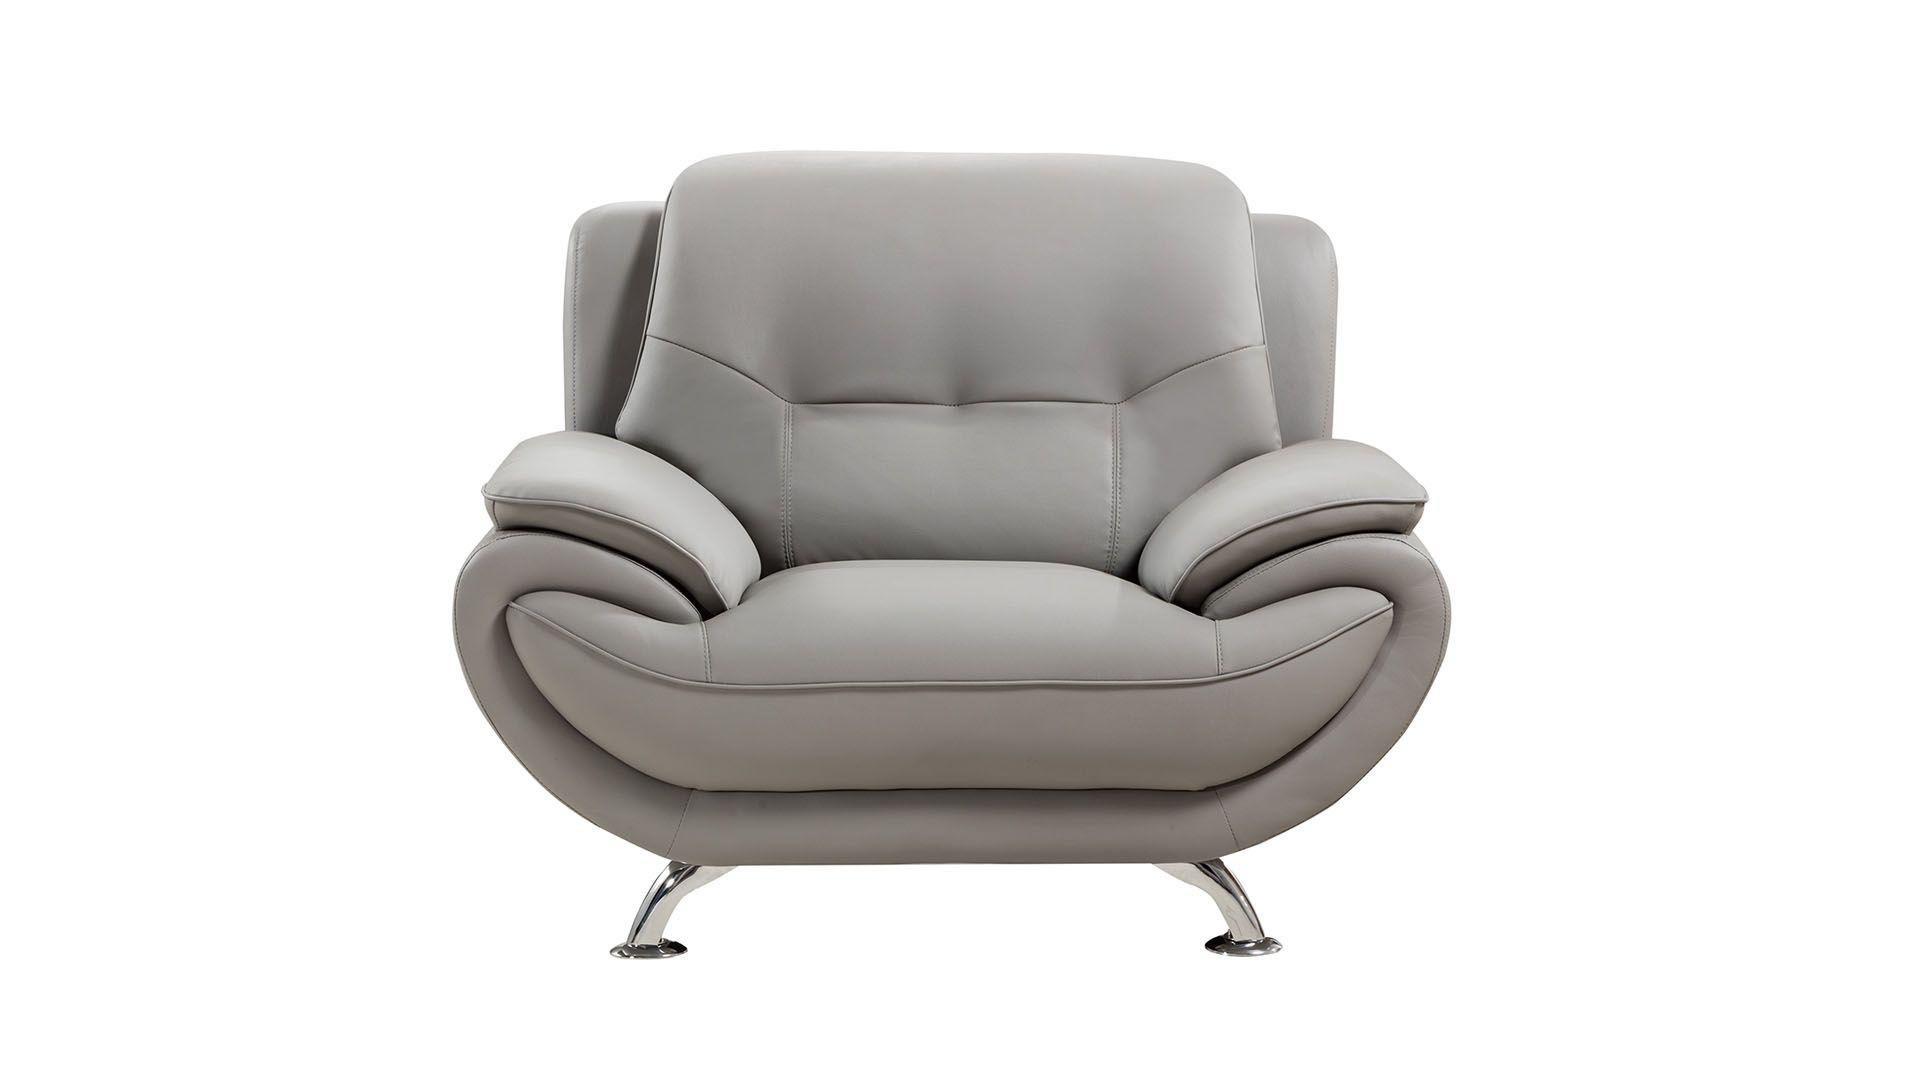 

    
AE208-GR-3PC American Eagle Furniture Sofa Set
